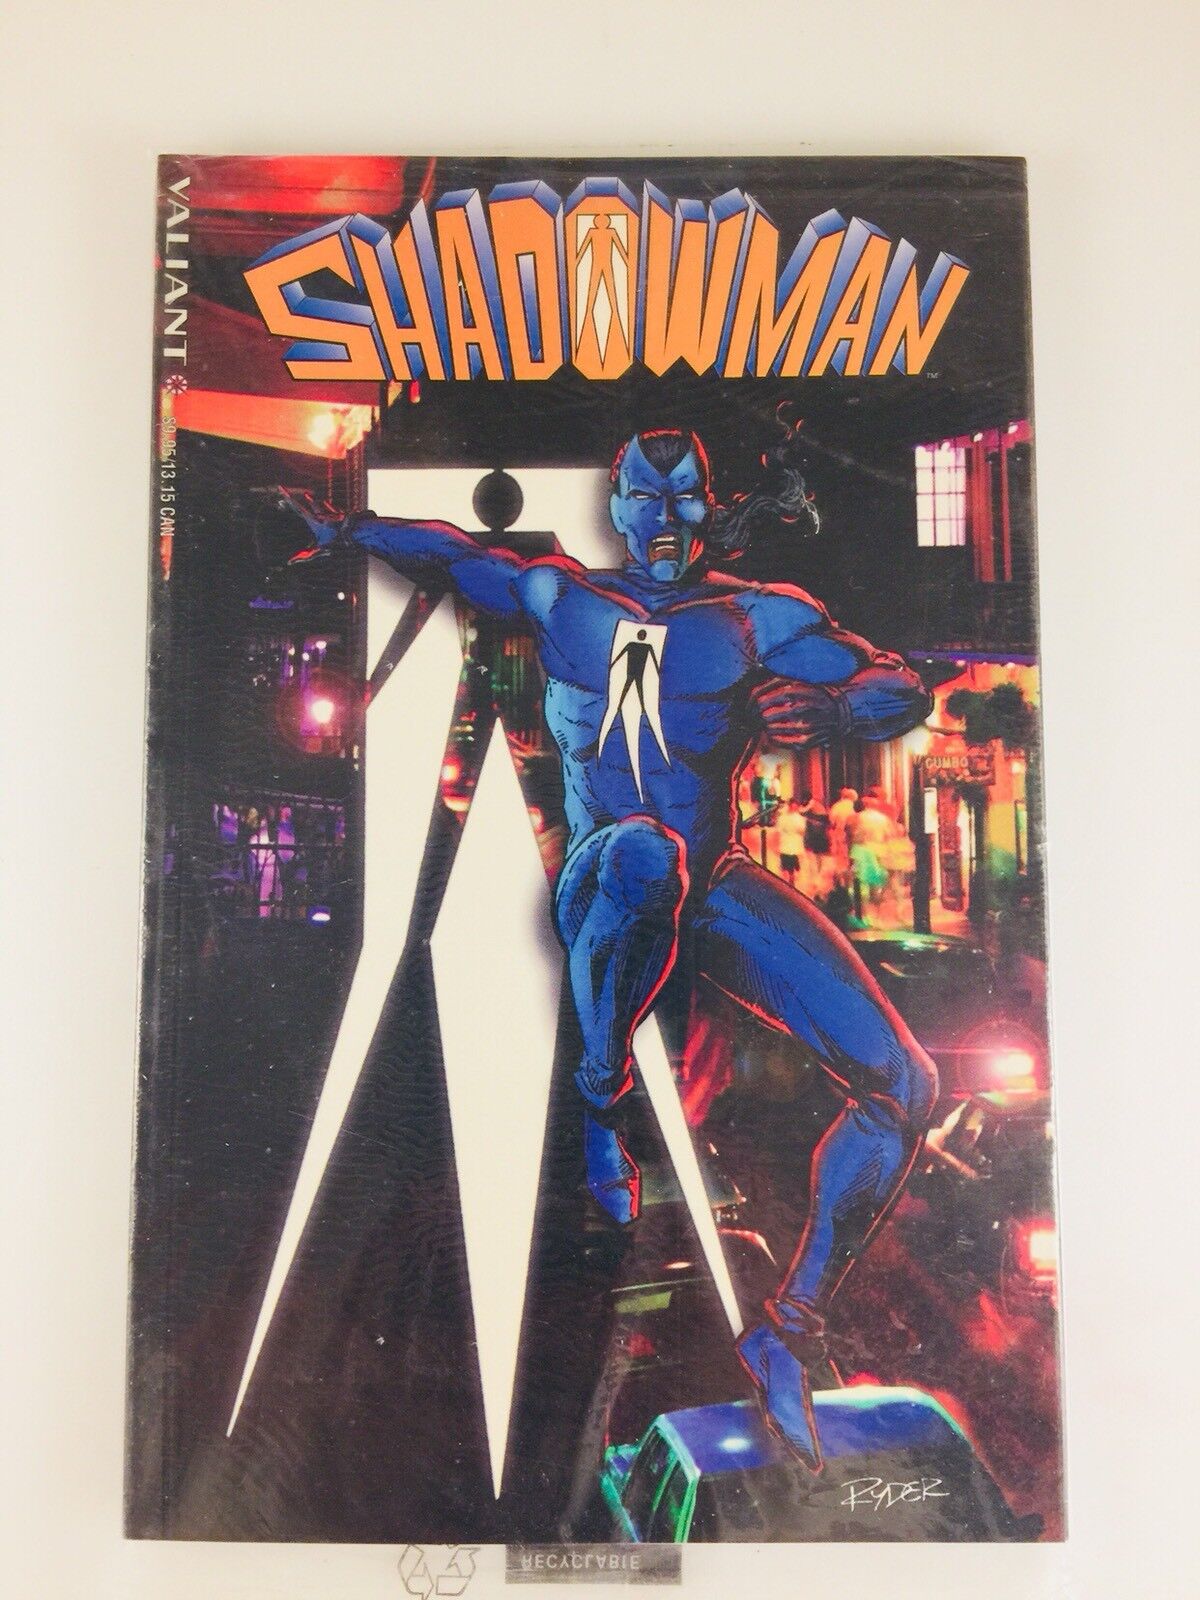 1994 SHADOWMAN Vol 1 #1 Valiant 1st ed w/ Darque Passages comic insert NIP